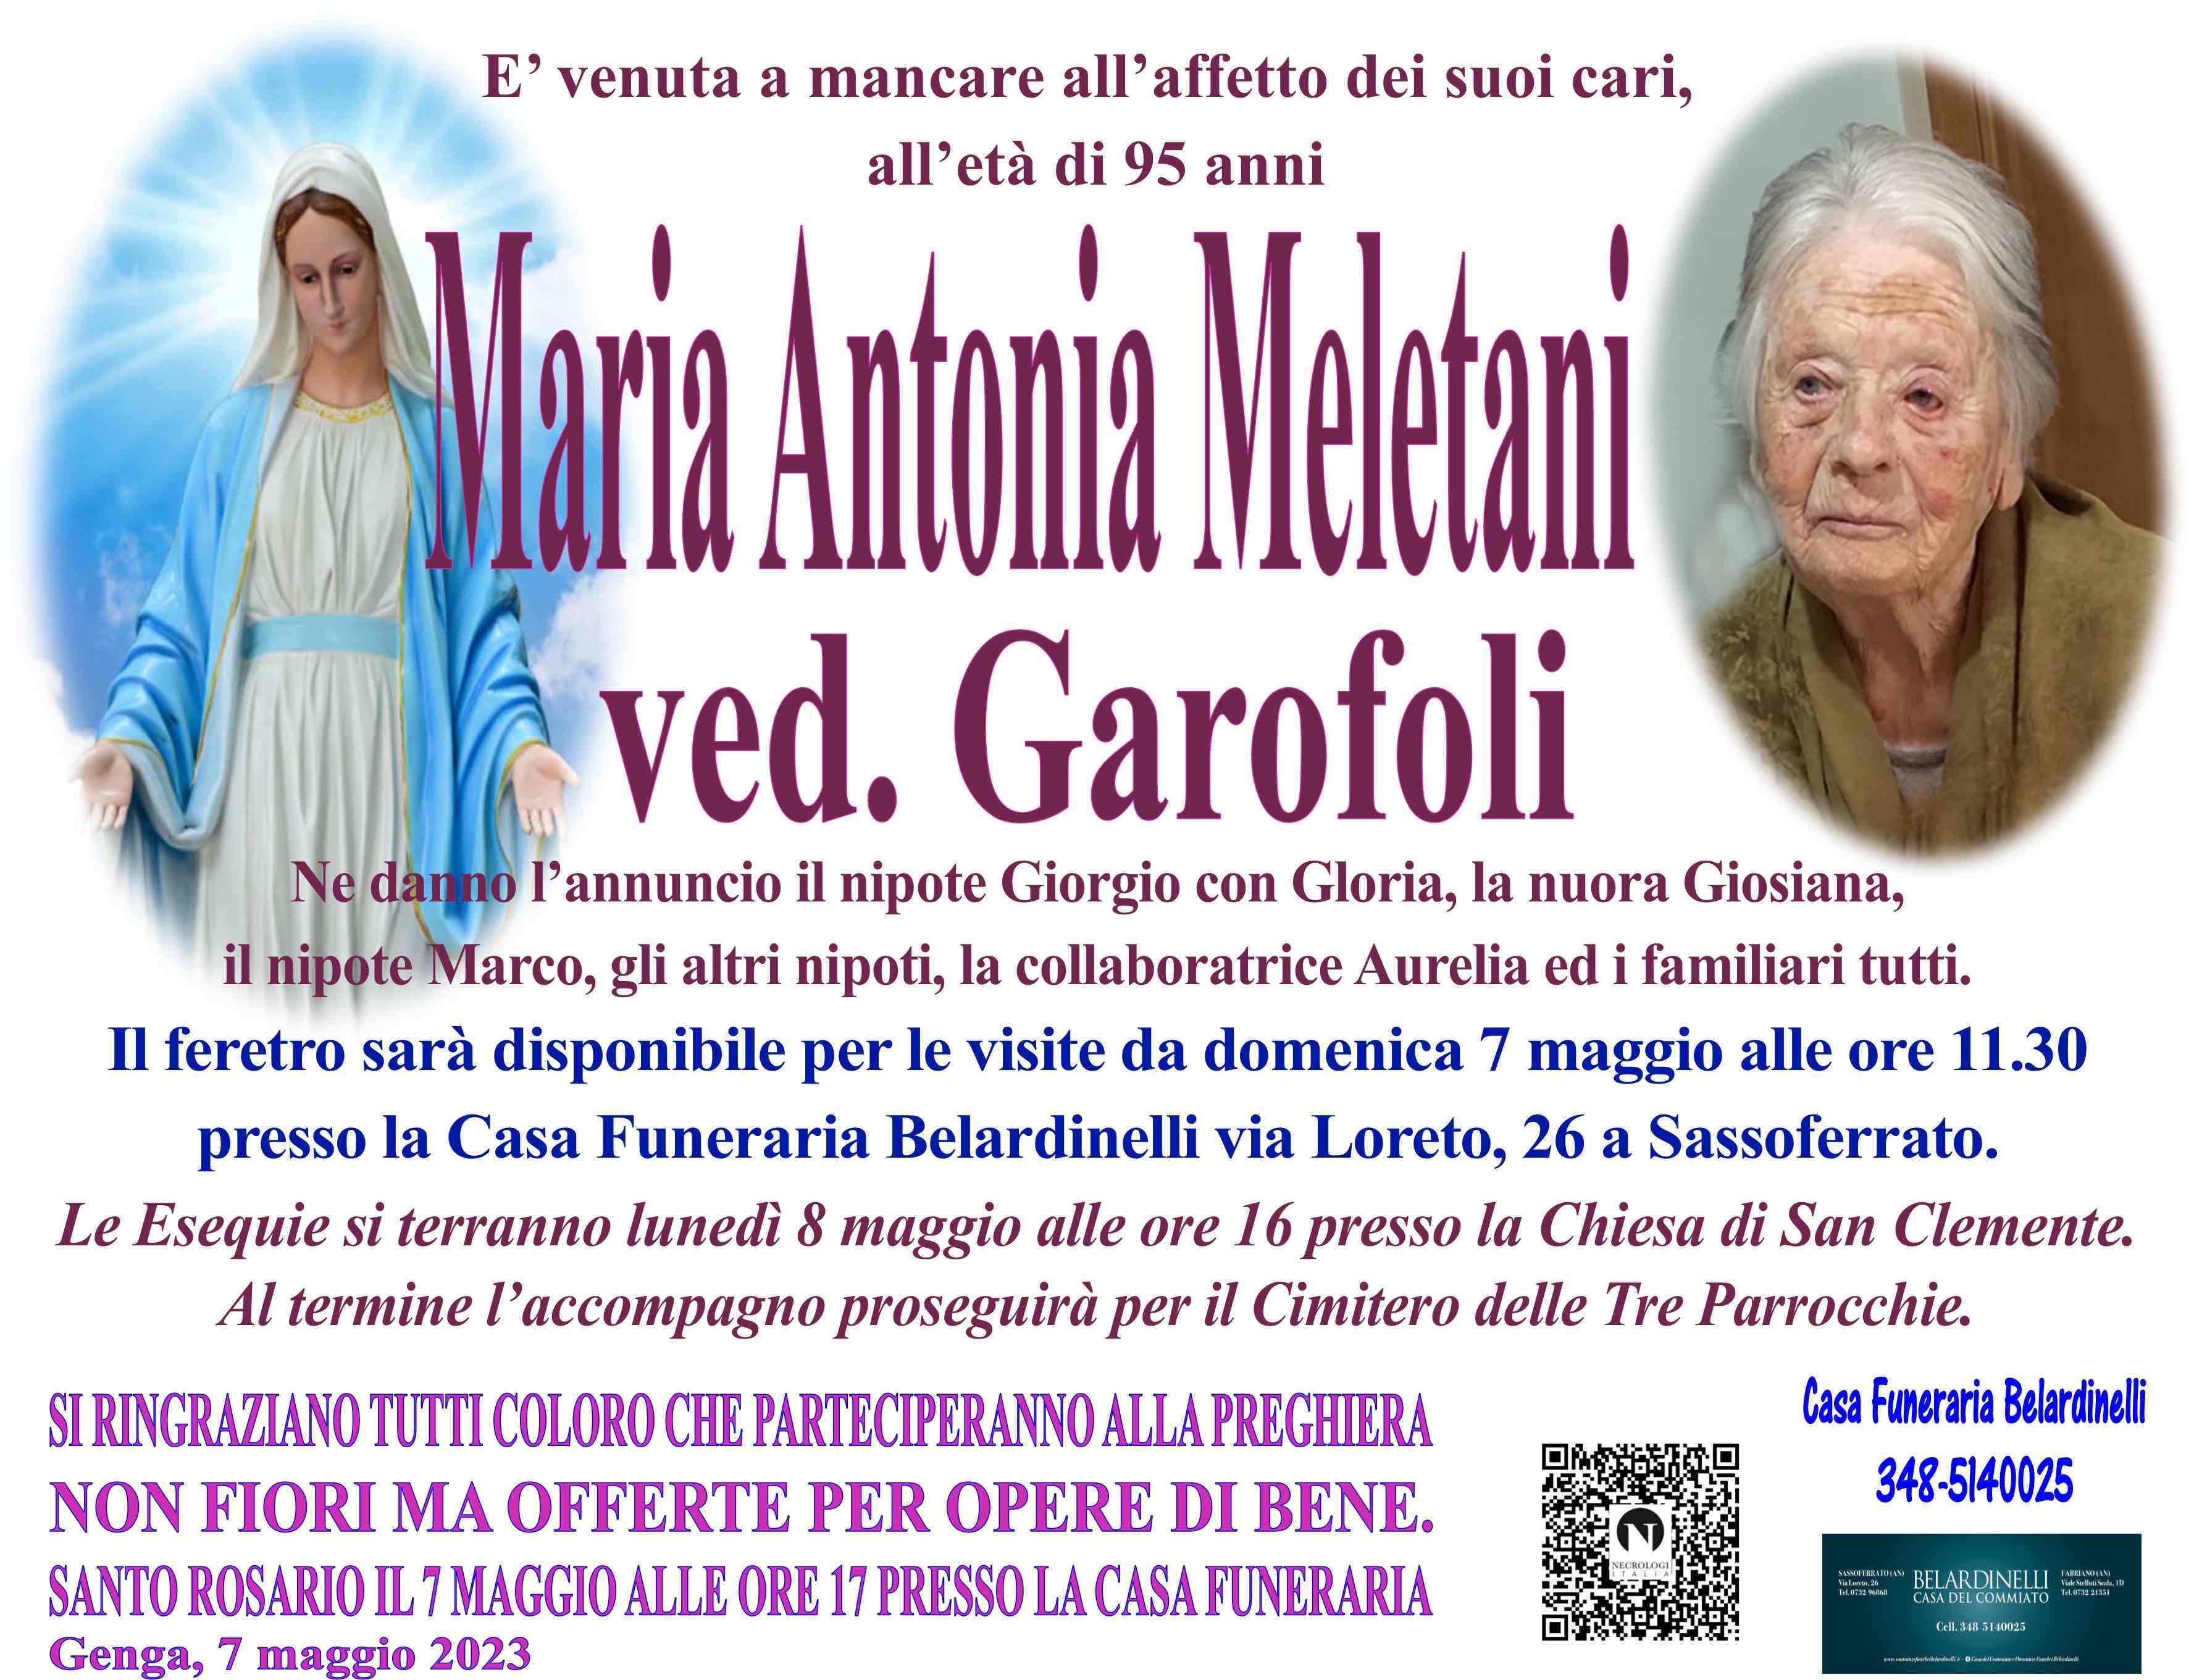 Maria Antonia Meletani